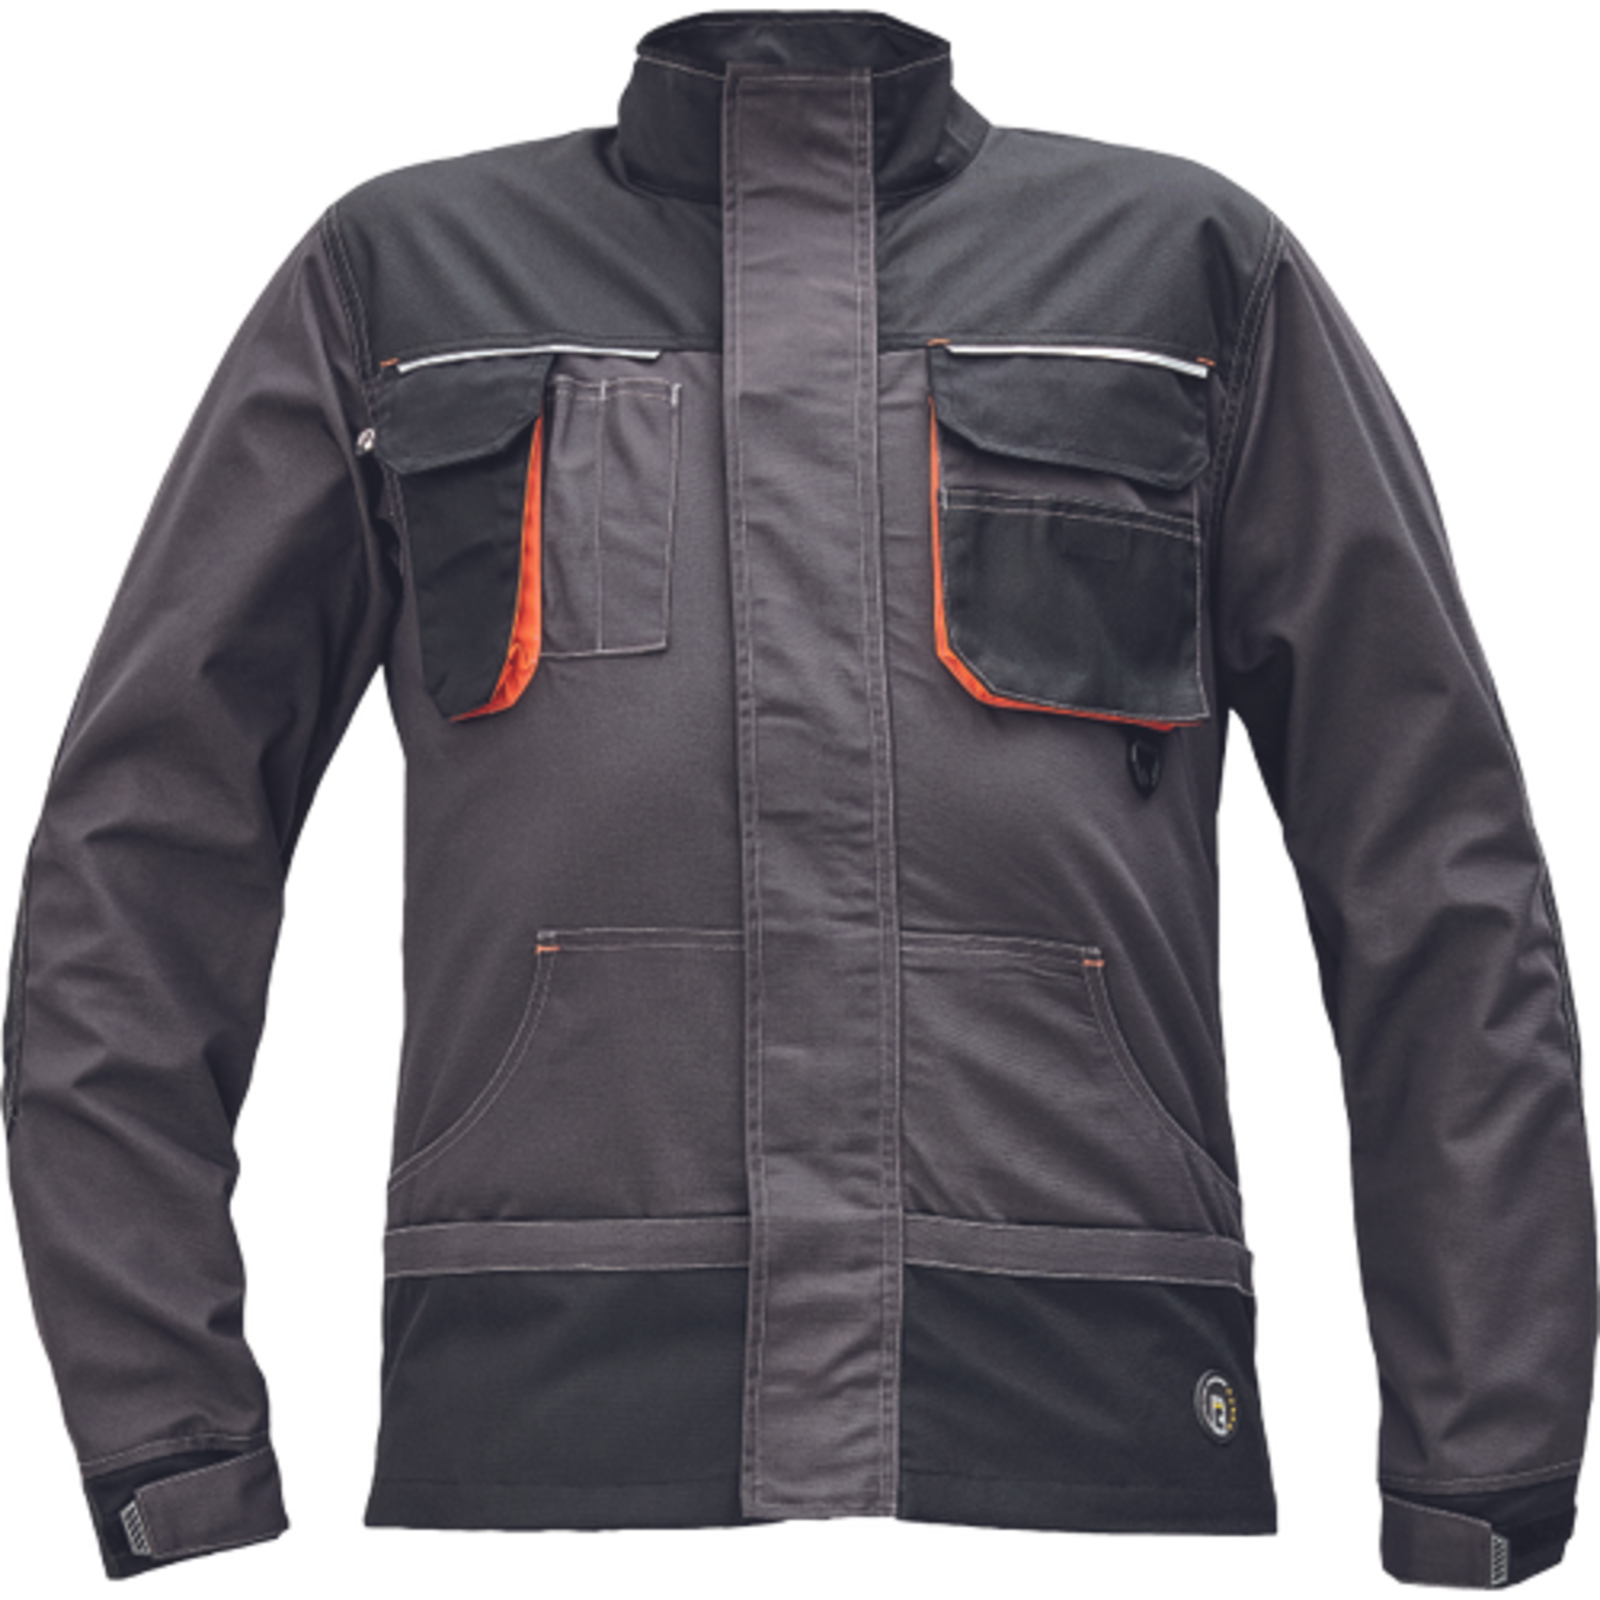 Odolná montérková bunda Emerton Plus - veľkosť: 60, farba: antracit/oranžová